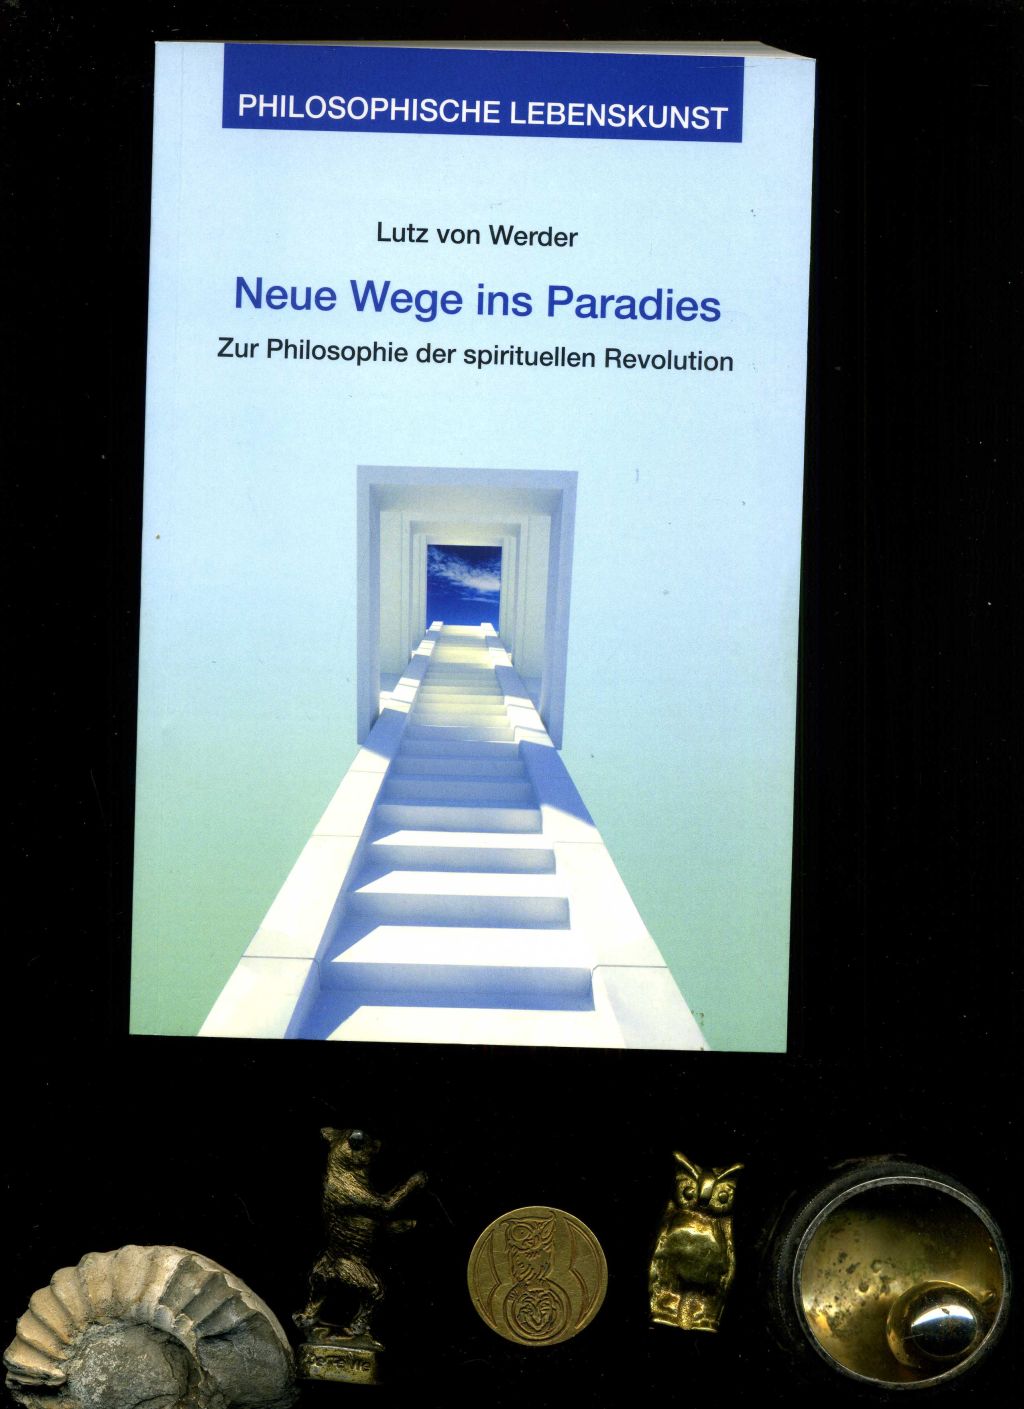 Neue Wege ins Paradies: Zur Philosophie der spirituellen Revolution. In der Reihe: Philosophische Lebenskunst. - Lutz von Werder